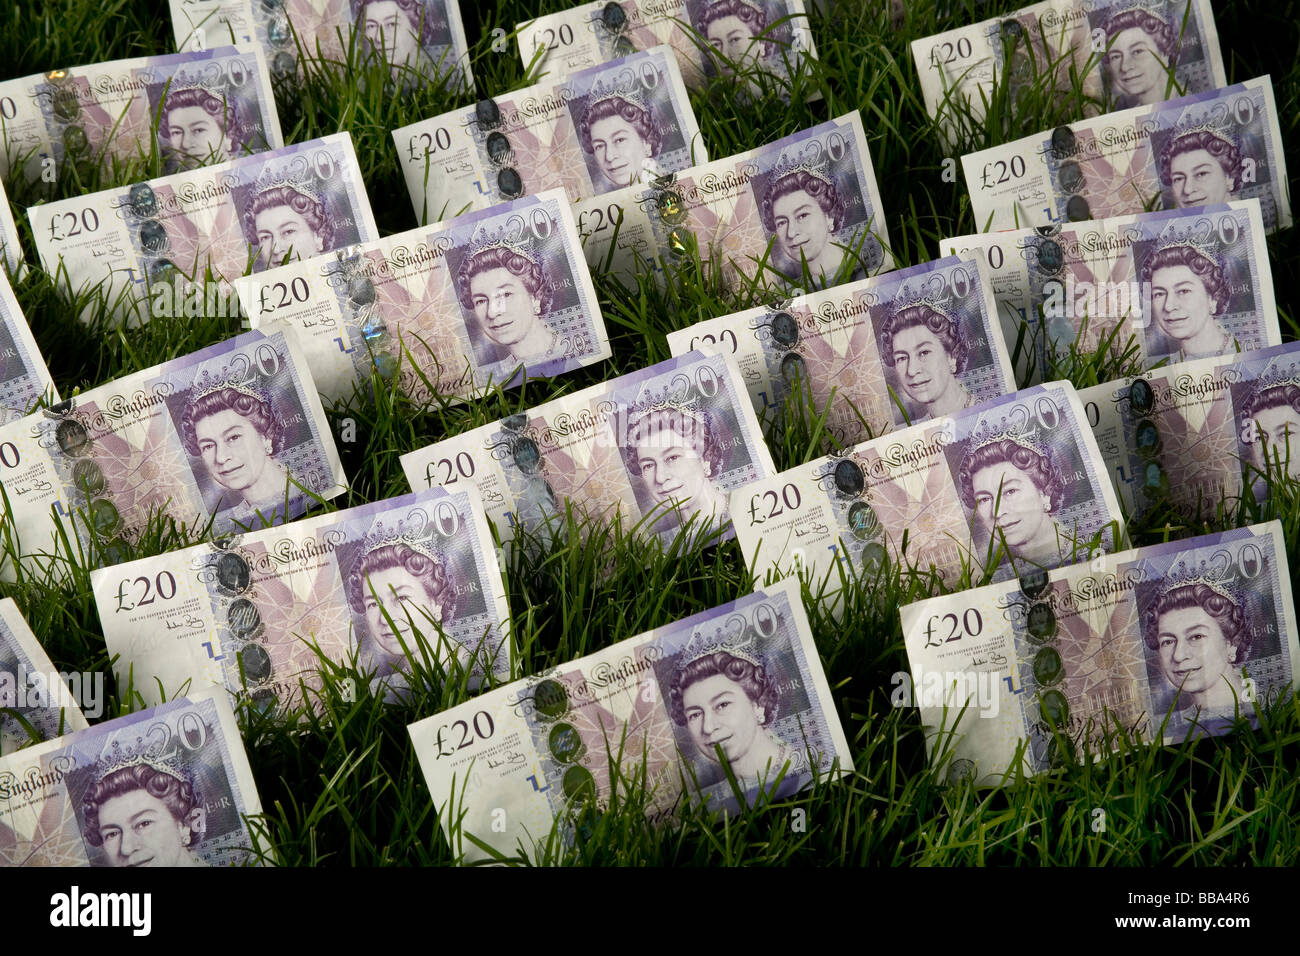 Germogli verdi di recupero venti pound note in un prato verde il denaro su un prato che rappresenta la crescita finanziaria Foto Stock